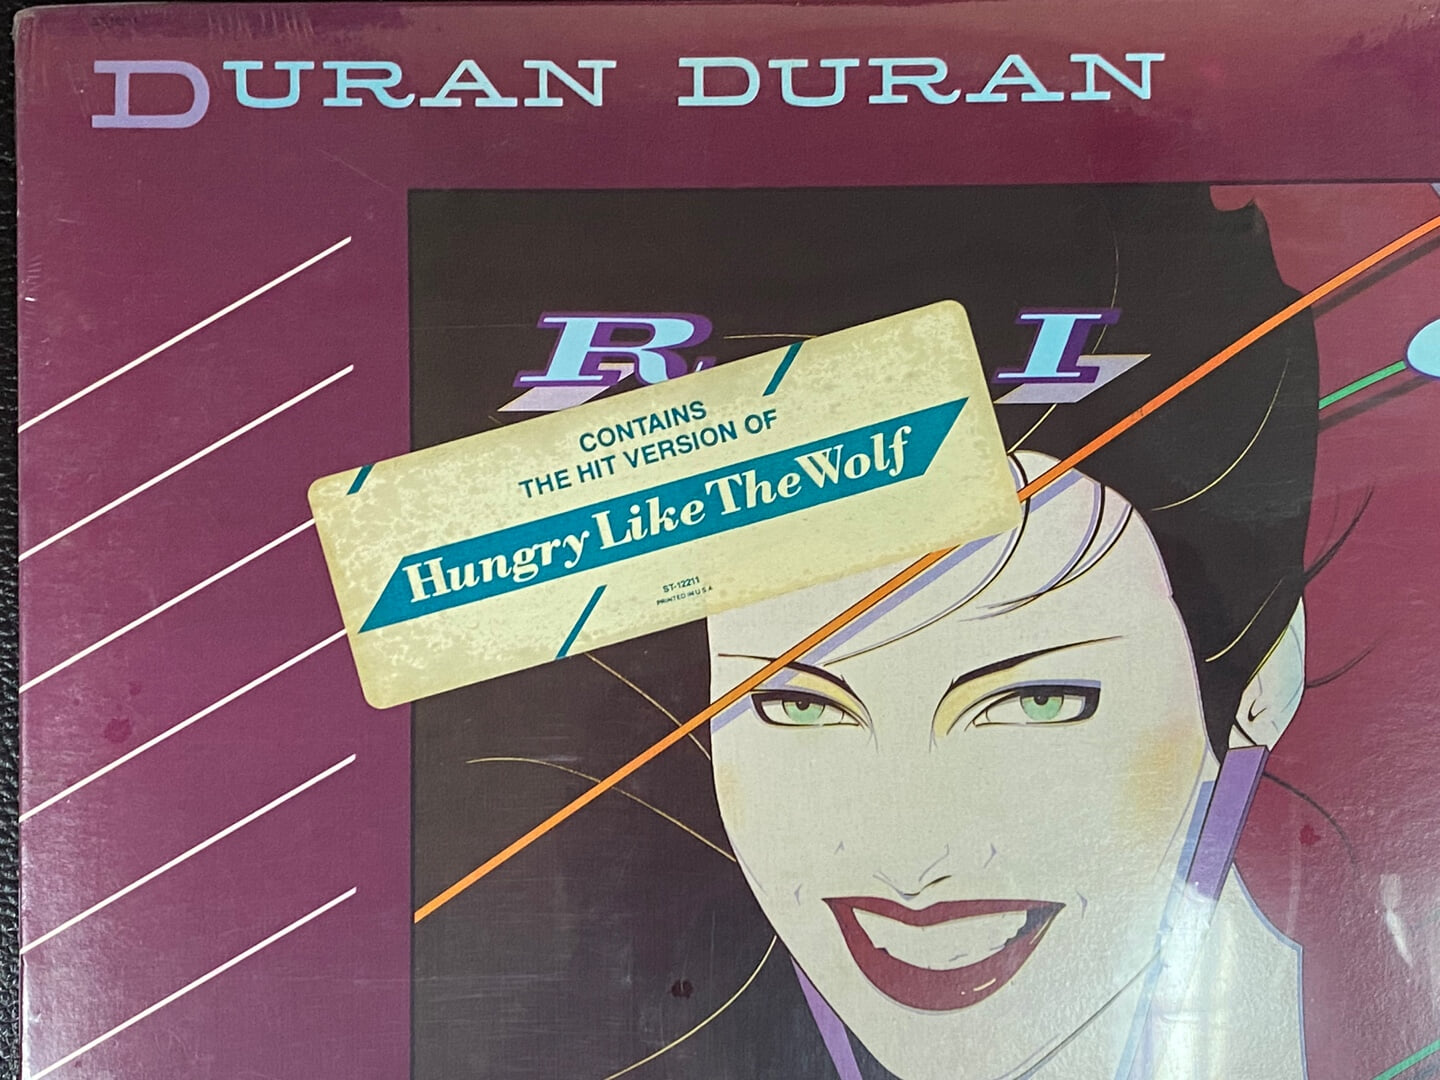 [LP] 듀란듀란 - Duran Duran - Rio LP [미개봉] [U.S반]